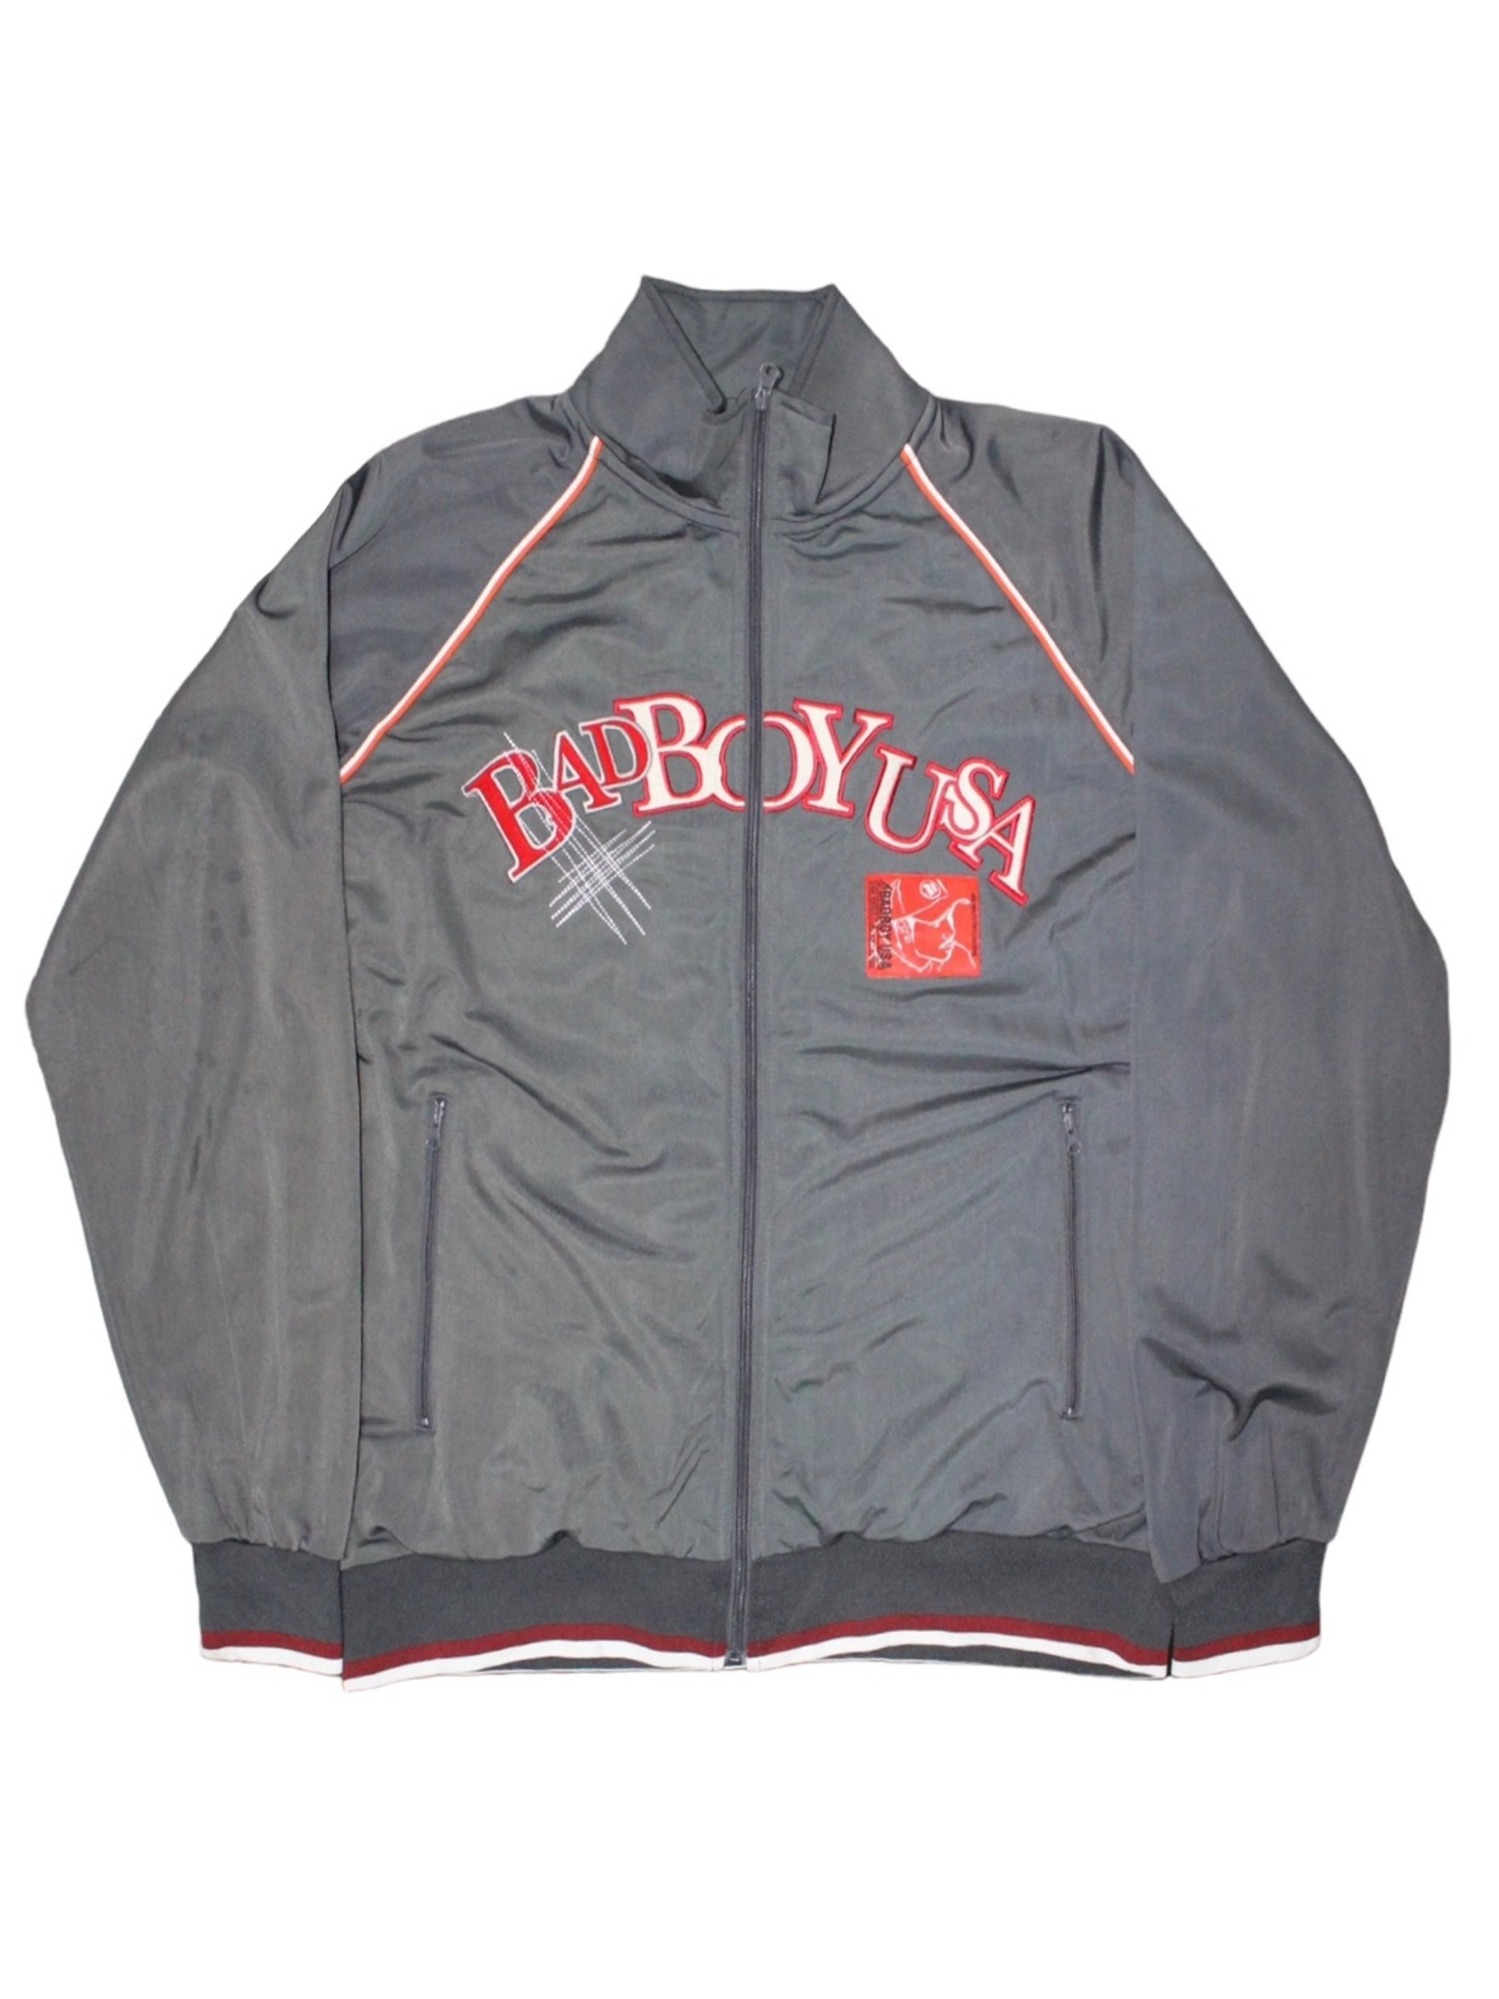 BADBOY Oldschool Overfit Jersey Jacket LL